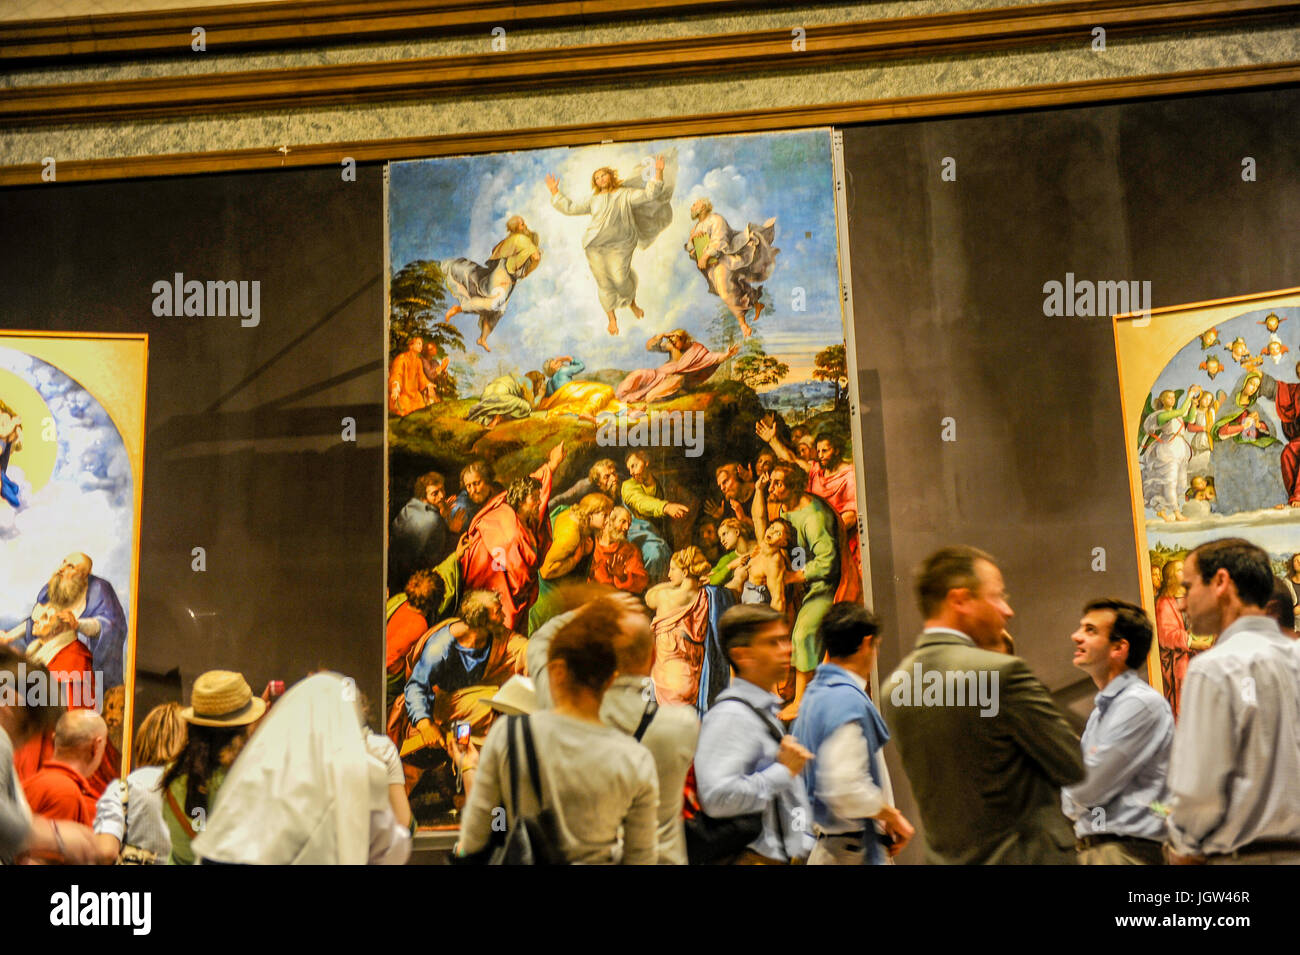 Les touristes d'admirer la Transfiguration (Raphaël) dans la Pinacothèque des Musées du Vatican. Musées du Vatican, Rome, Italie Banque D'Images